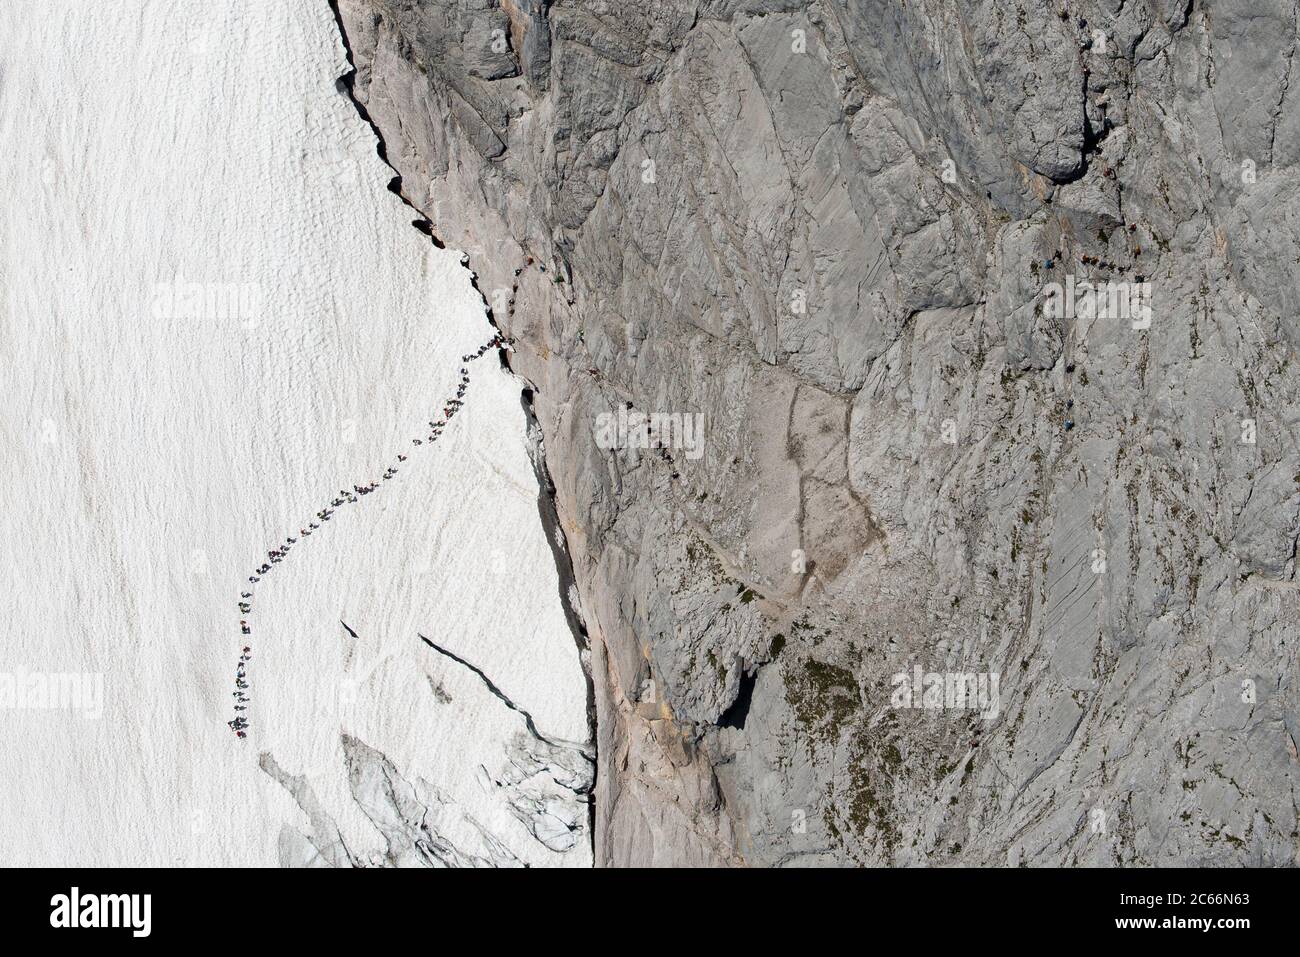 Alpinisti che si accodano sul ghiacciaio Höllentalferner, fotografia aerea, catena montuosa di Wetterstein, Baviera, Germania Foto Stock